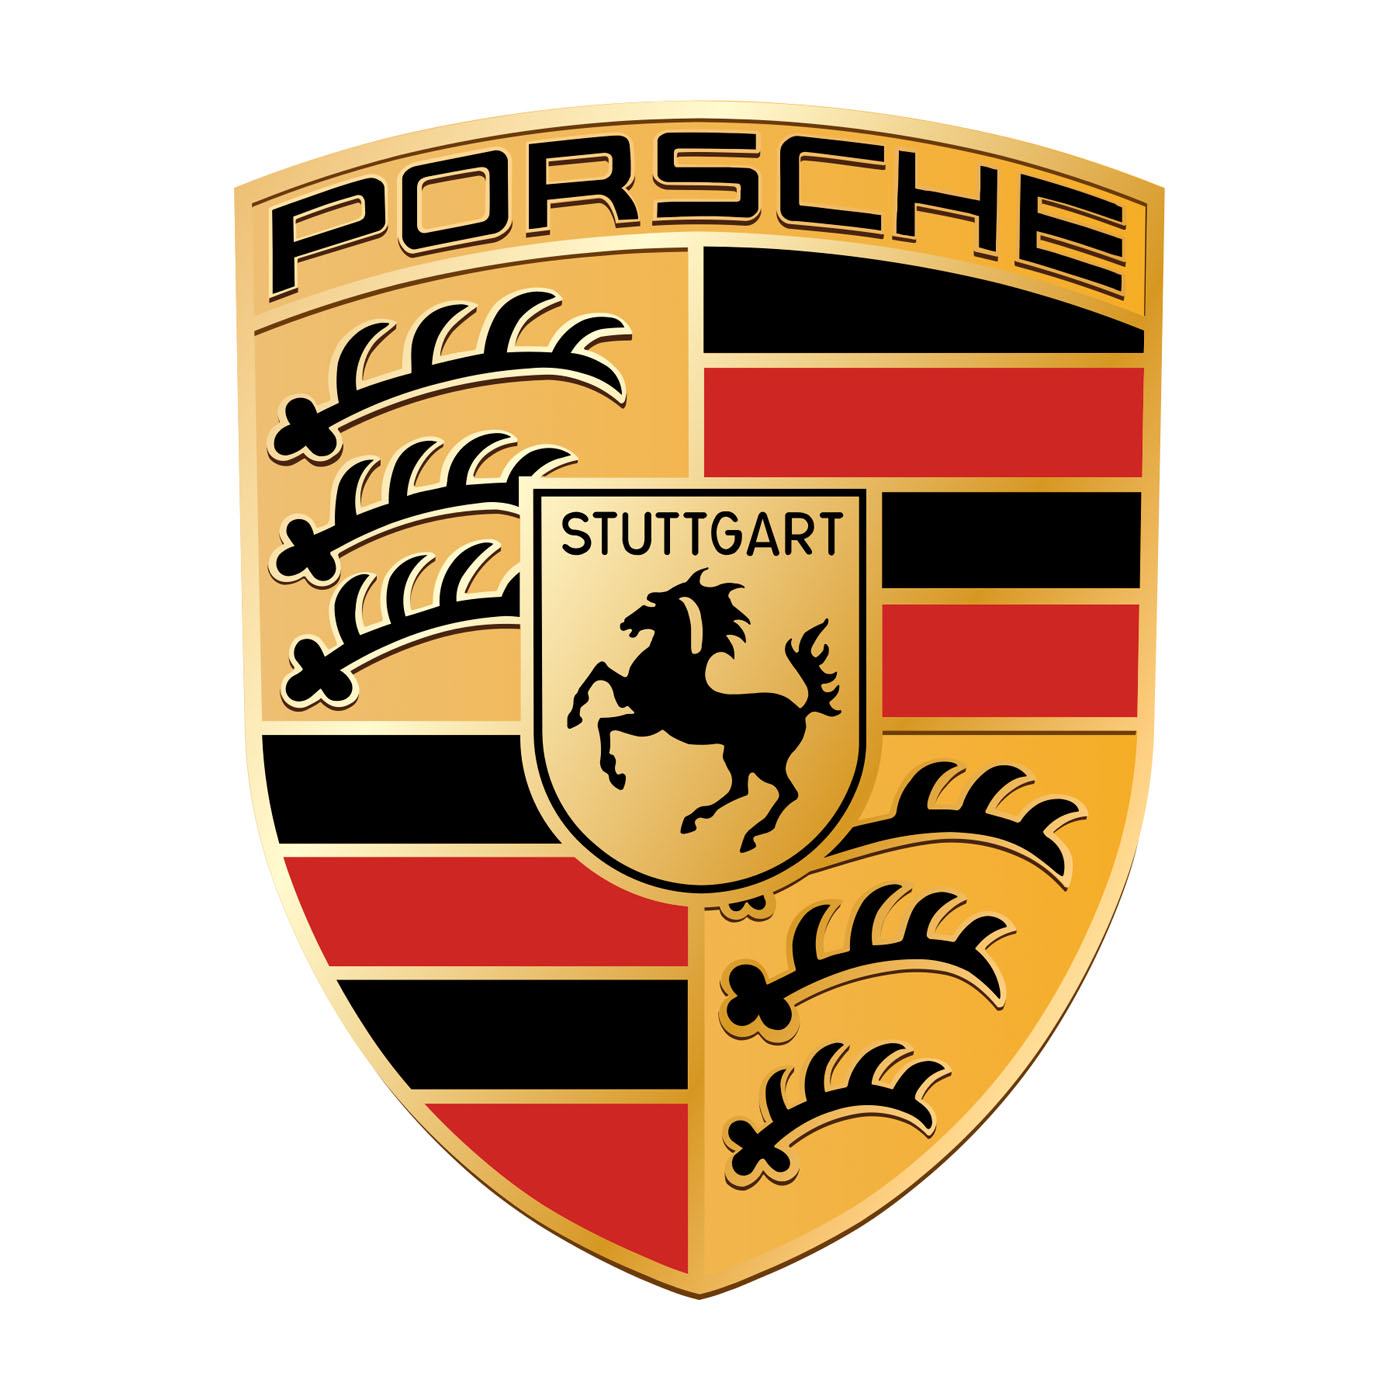 Porsche.